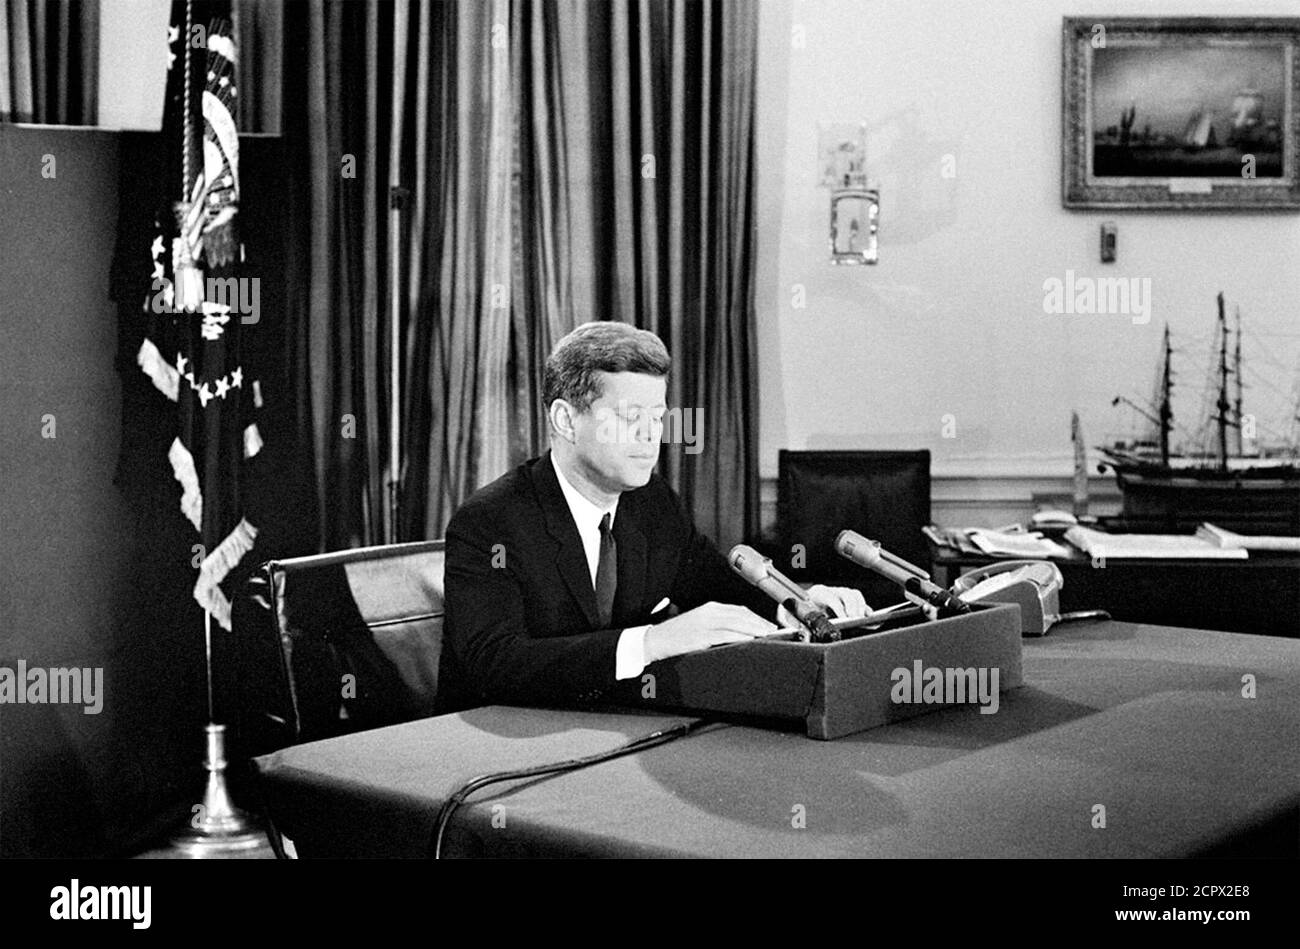 Kuba-Krise. Präsident John F. Kennedy wendet sich am 22. Oktober 1962 aus dem Oval Office an die Nation in Bezug auf die Bedrohung durch sowjetische Raketen in Kuba. Stockfoto